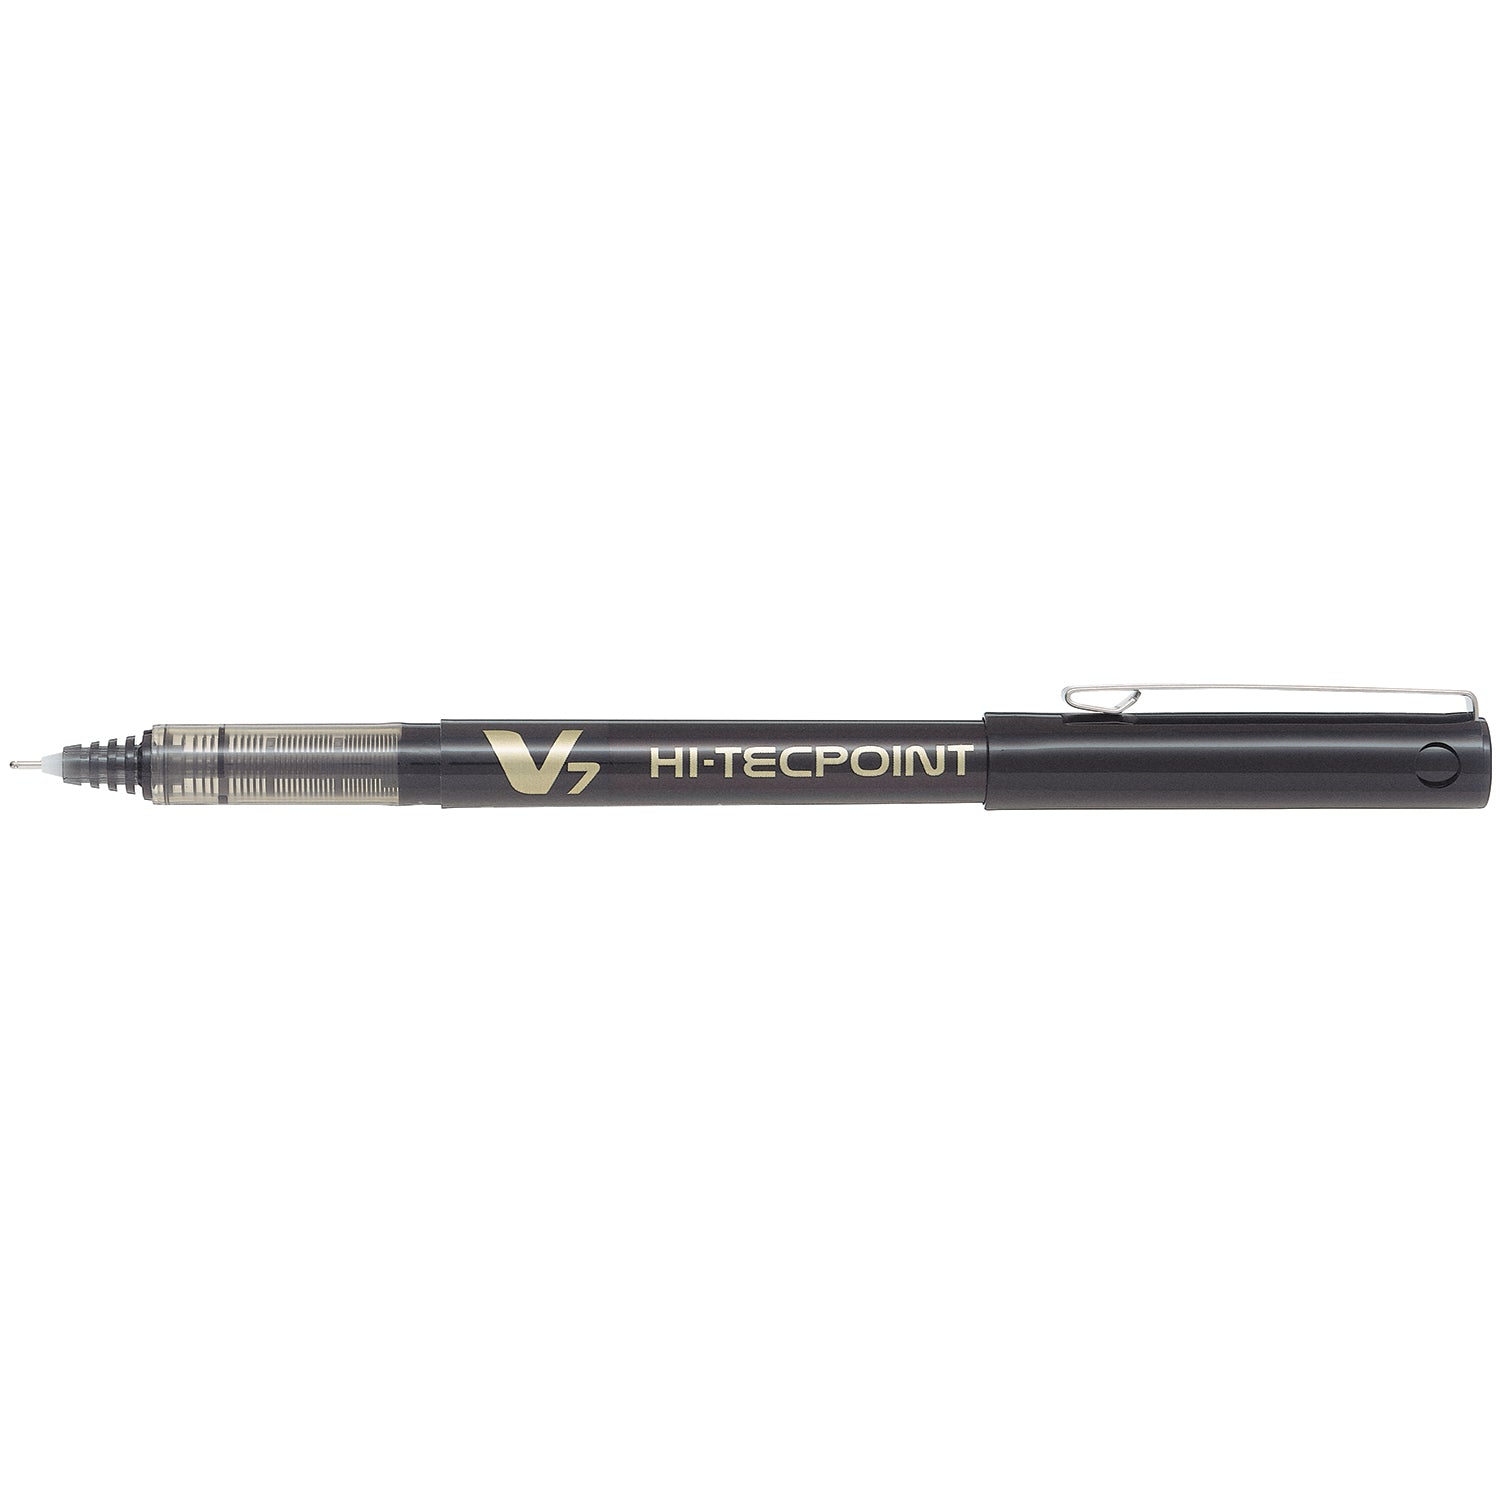 Pilot Pen Hi Tecpoint V7 Capped - Black